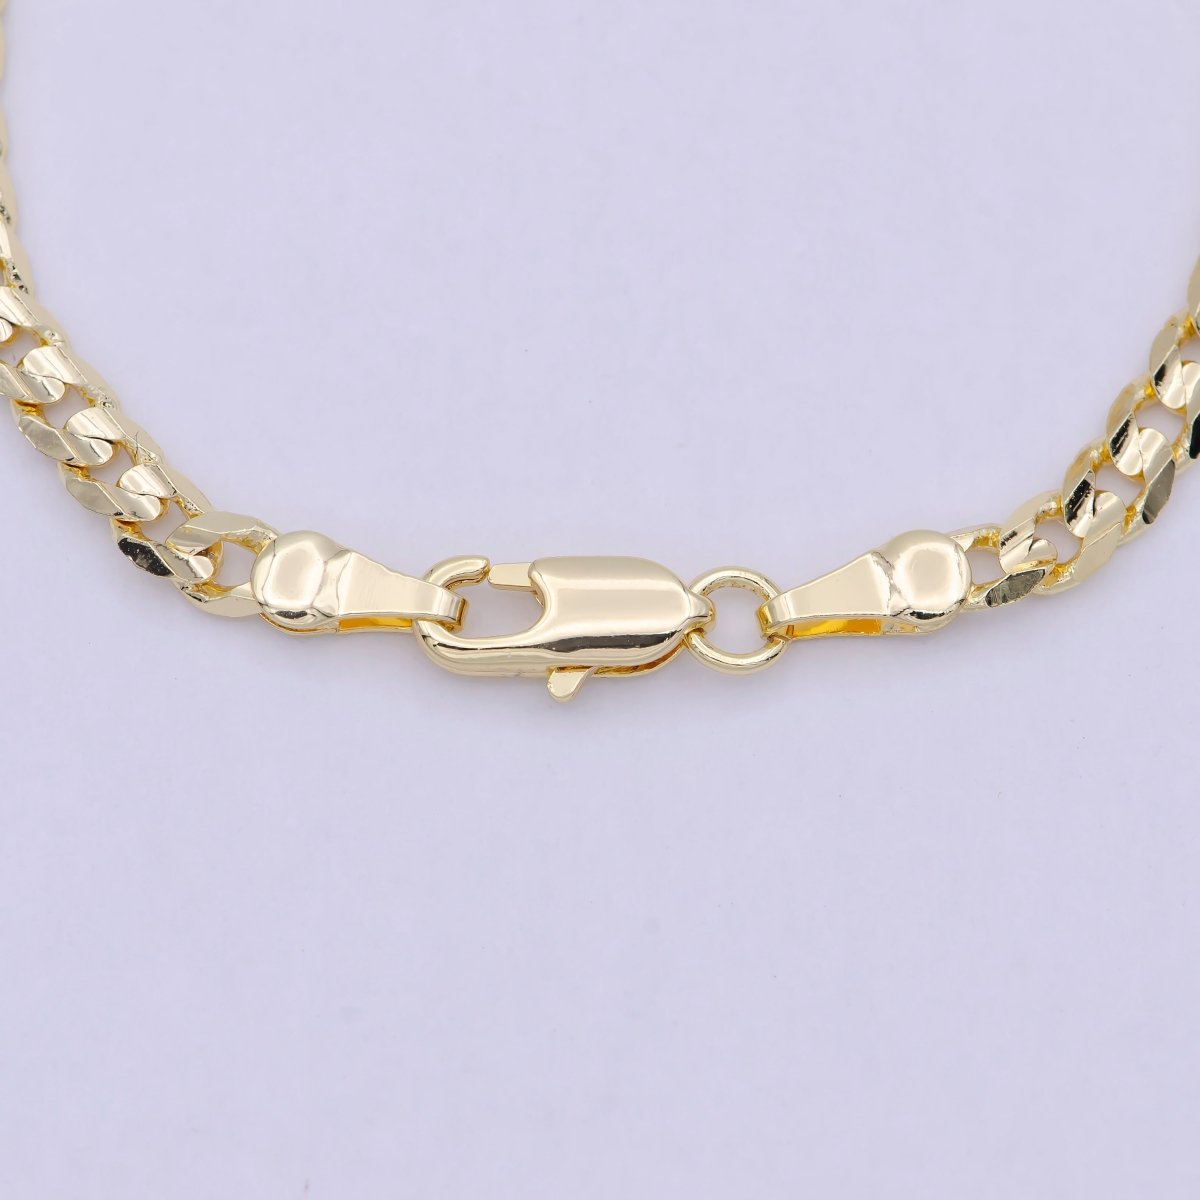 OS 18k Gold Filled Cuban Link Chain Bracelet 7", Gold Curb Chain Bracelet, Miami Cuban Bracelet, Cuban Chain Bracelet Women WA-847 - DLUXCA